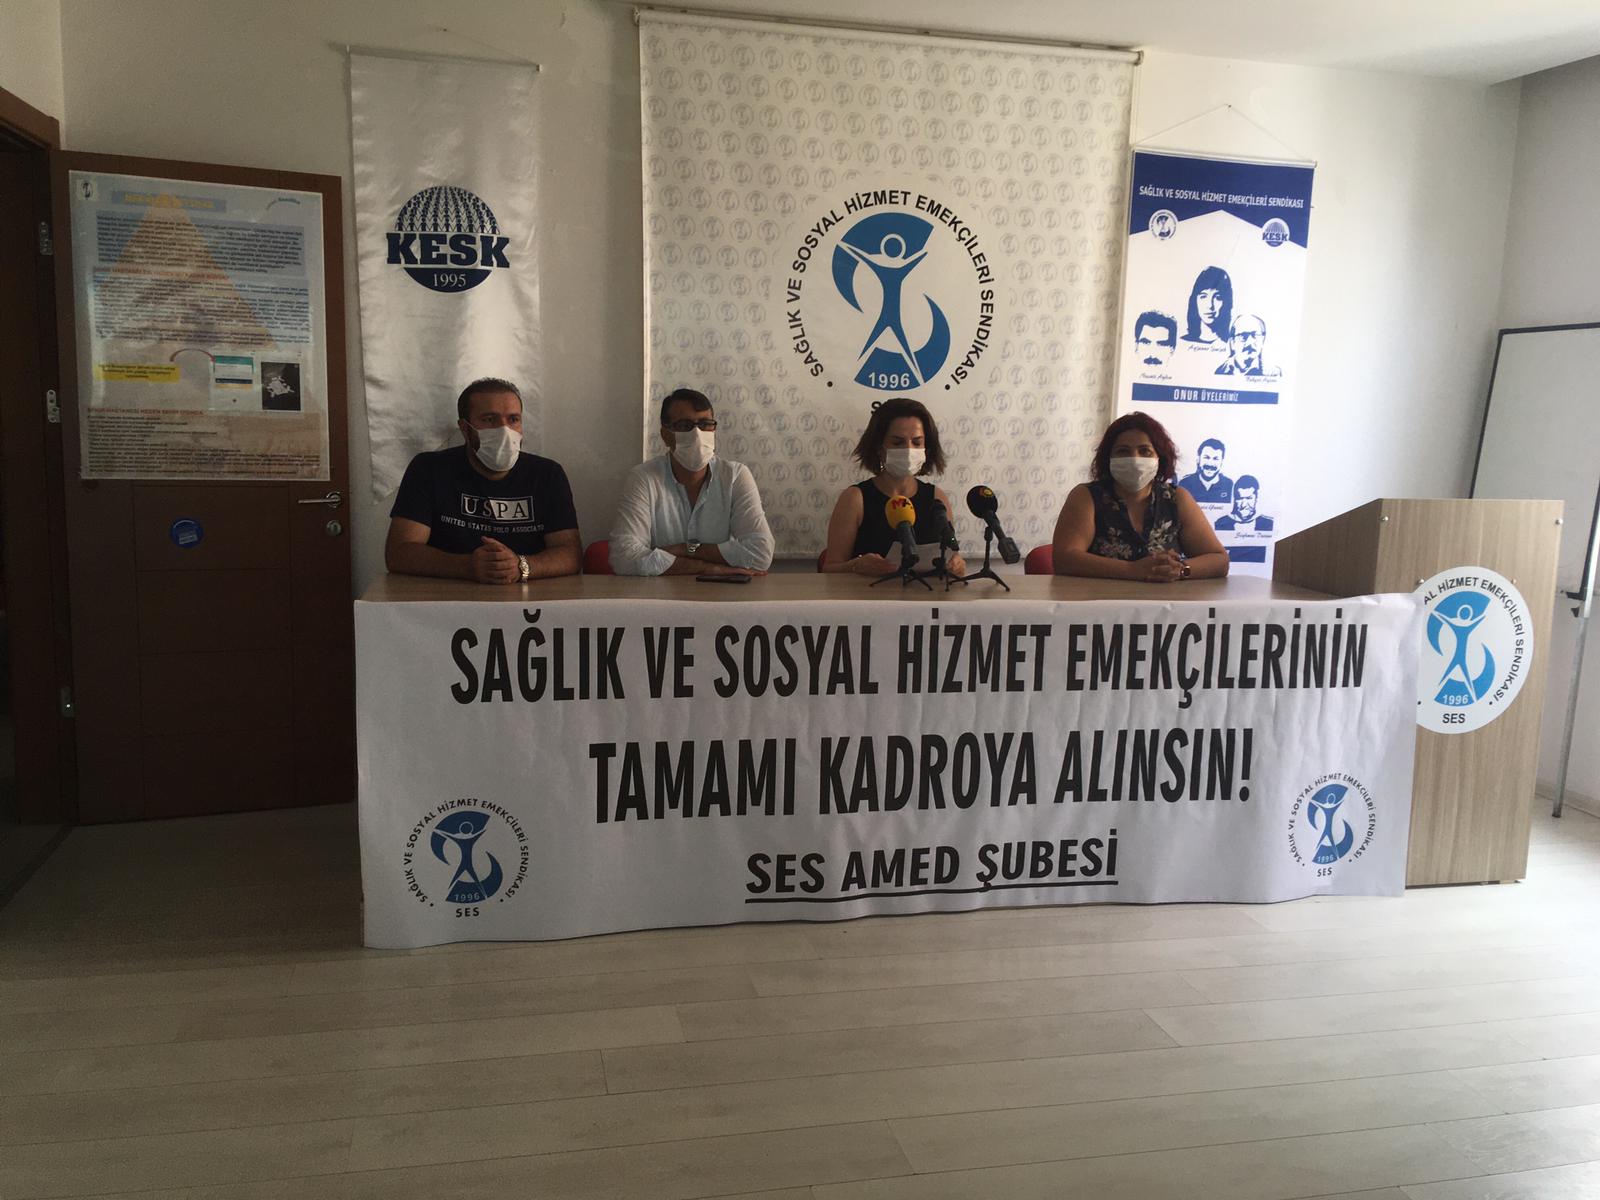 Diyarbakır Şubemiz “Güvenceli İş, Güvenli Gelecek” İmzalarını TBMM’ye Sunulması İçin Genel Merkezimize Gönderdi